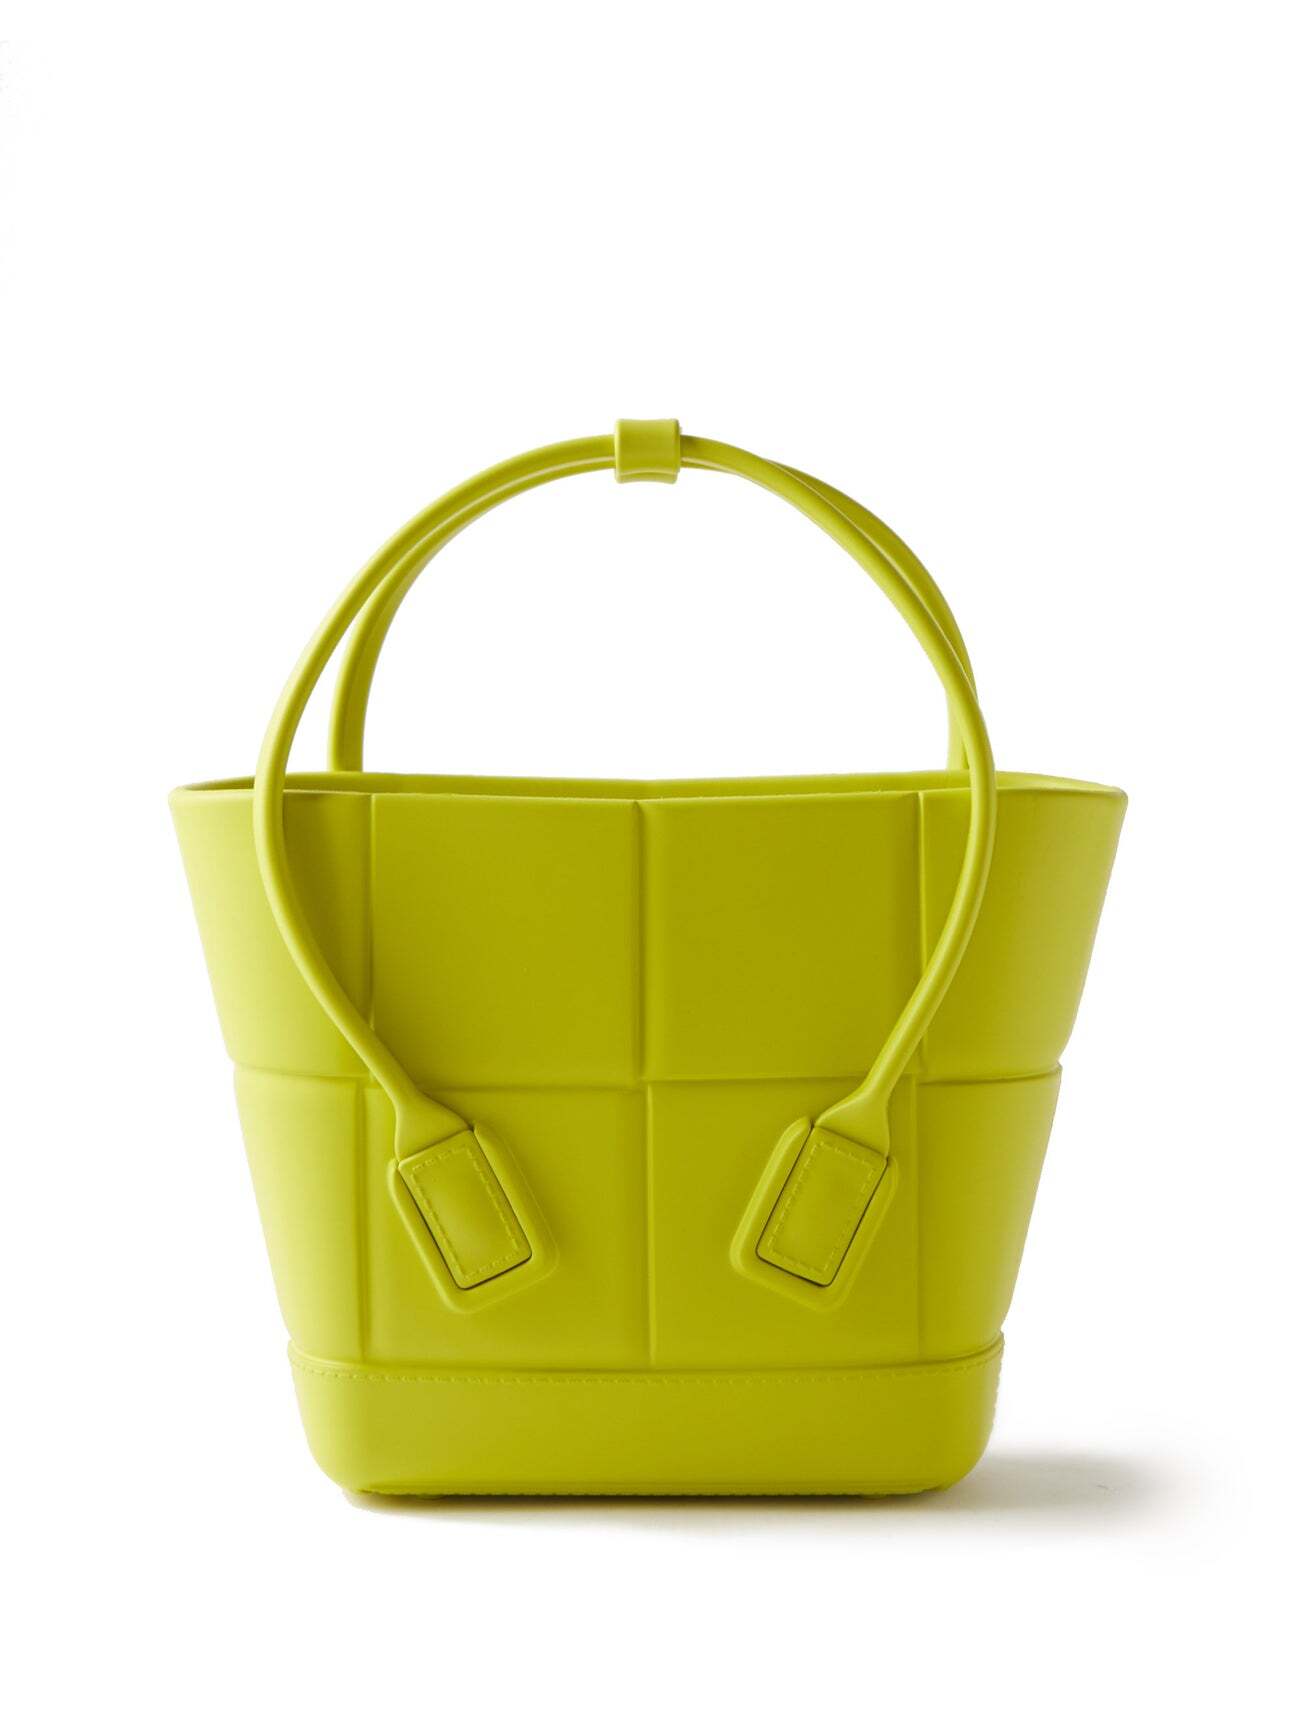 Bottega Veneta - Arco Small Intrecciato-effect Rubber Tote Bag - Womens - Yellow